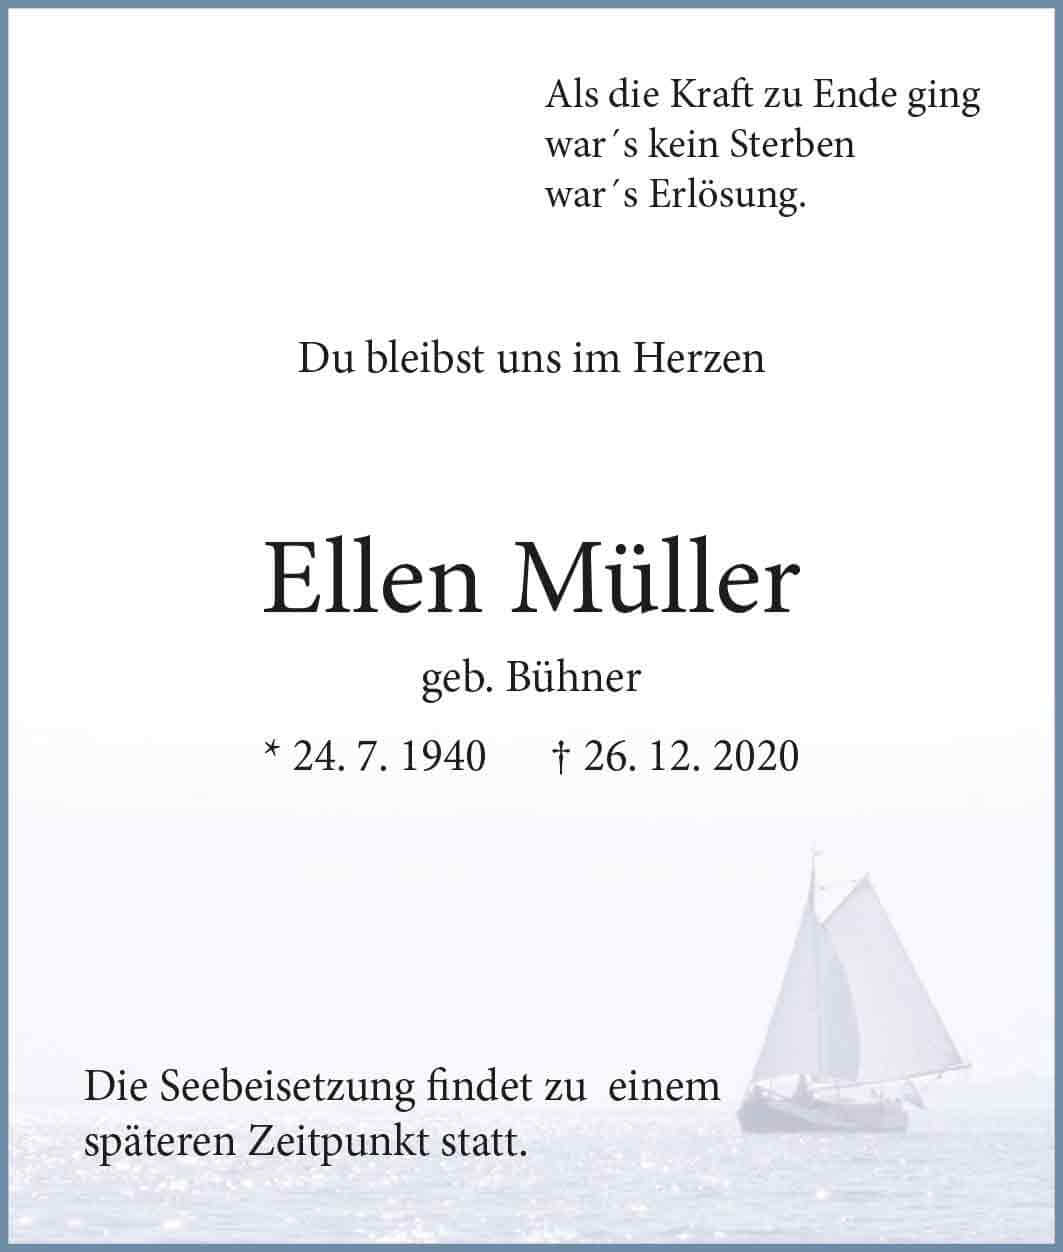 Ellen Müller † 26. 12. 2020